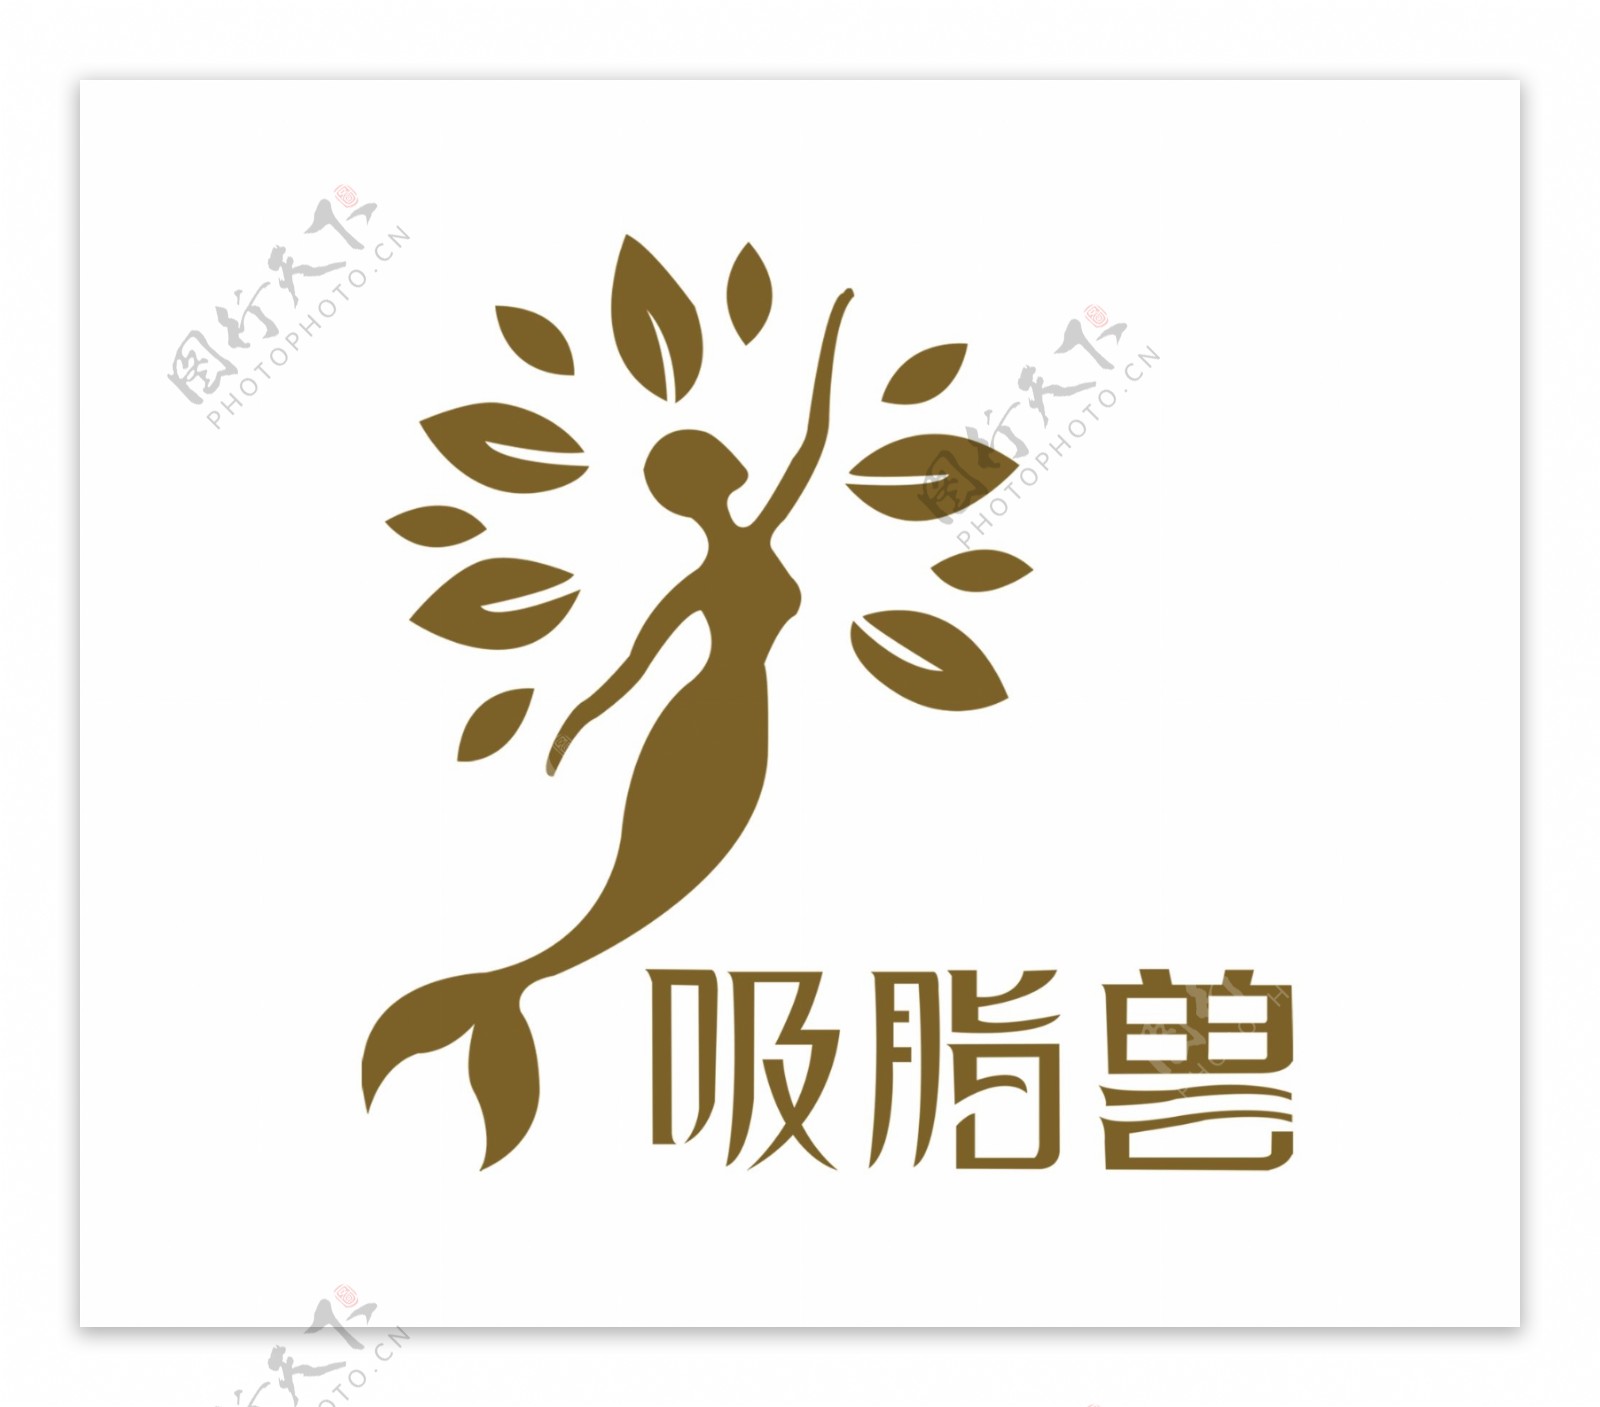 吸脂兽logo